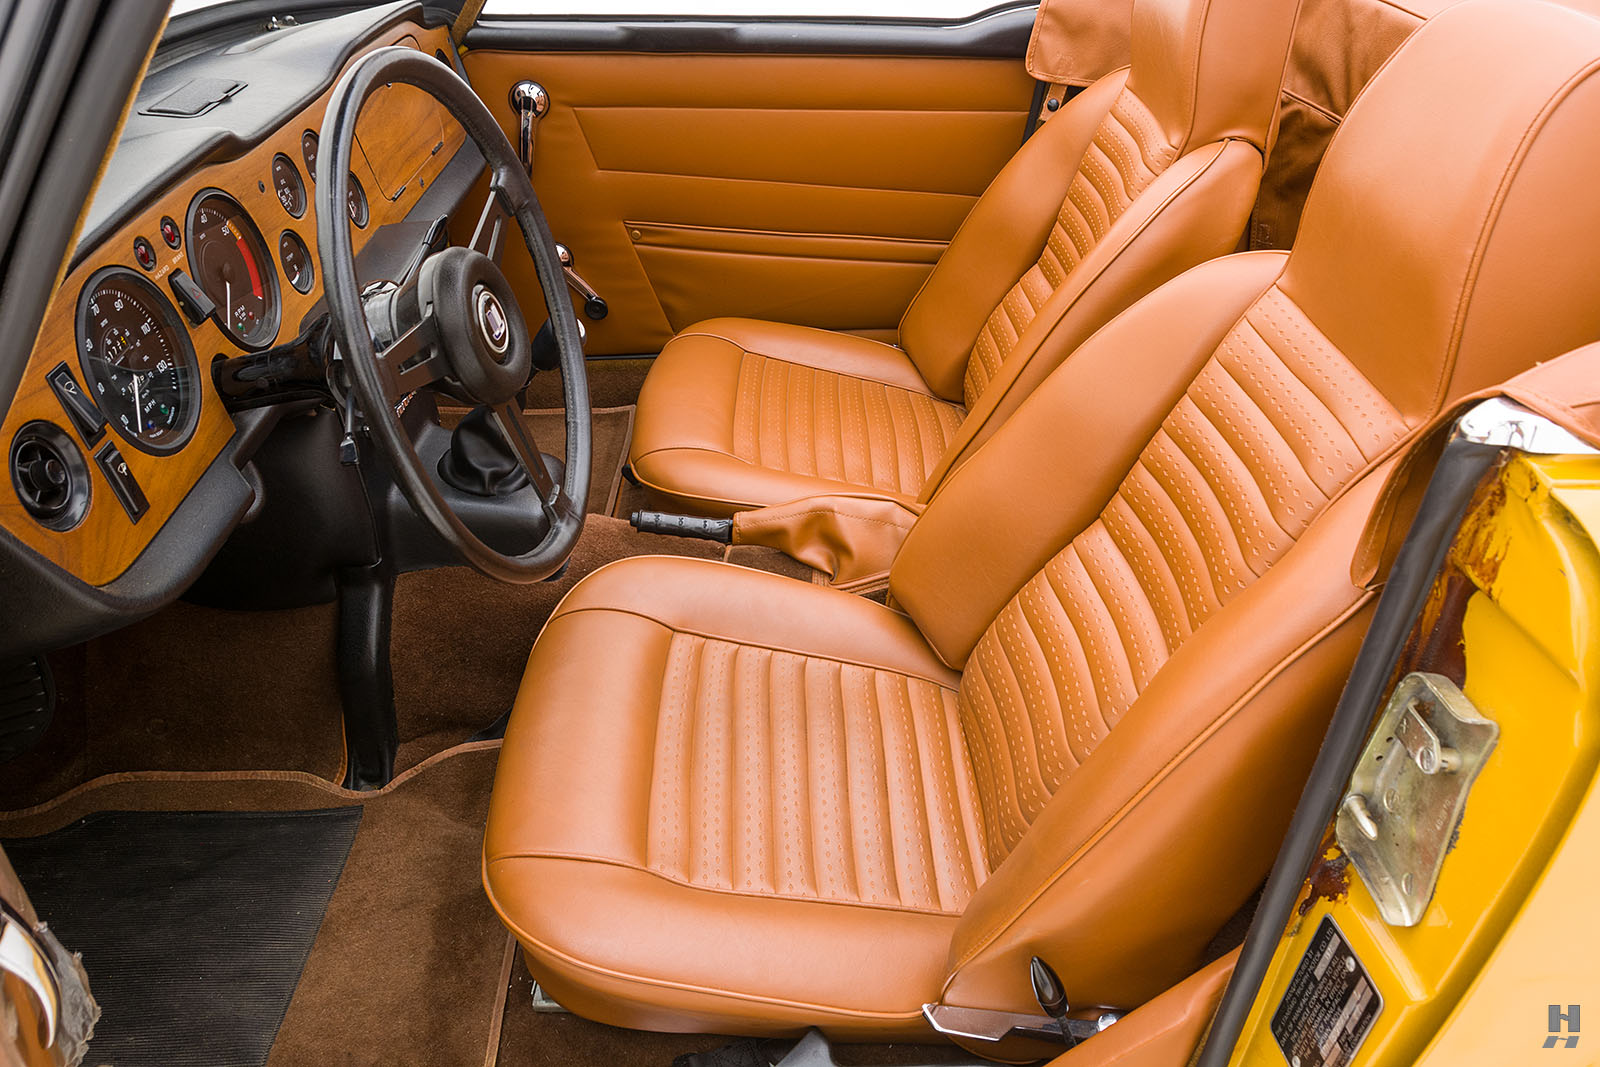 1970 Triumph TR6